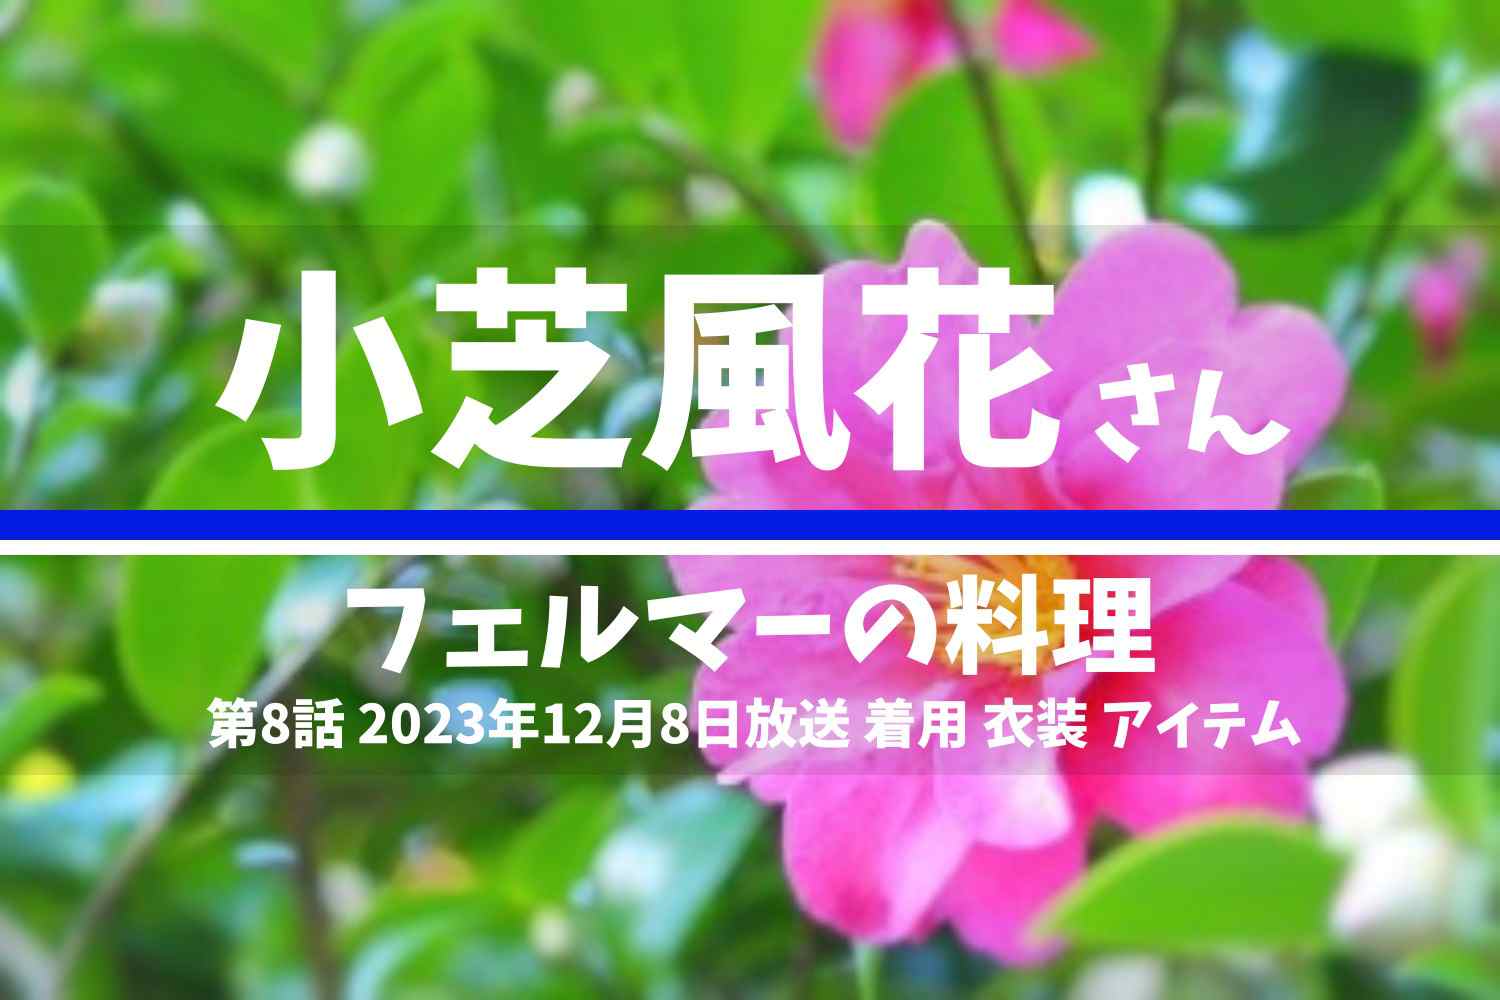 フェルマーの料理 小芝風花さん テレビドラマ 衣装 2023年12月8日放送